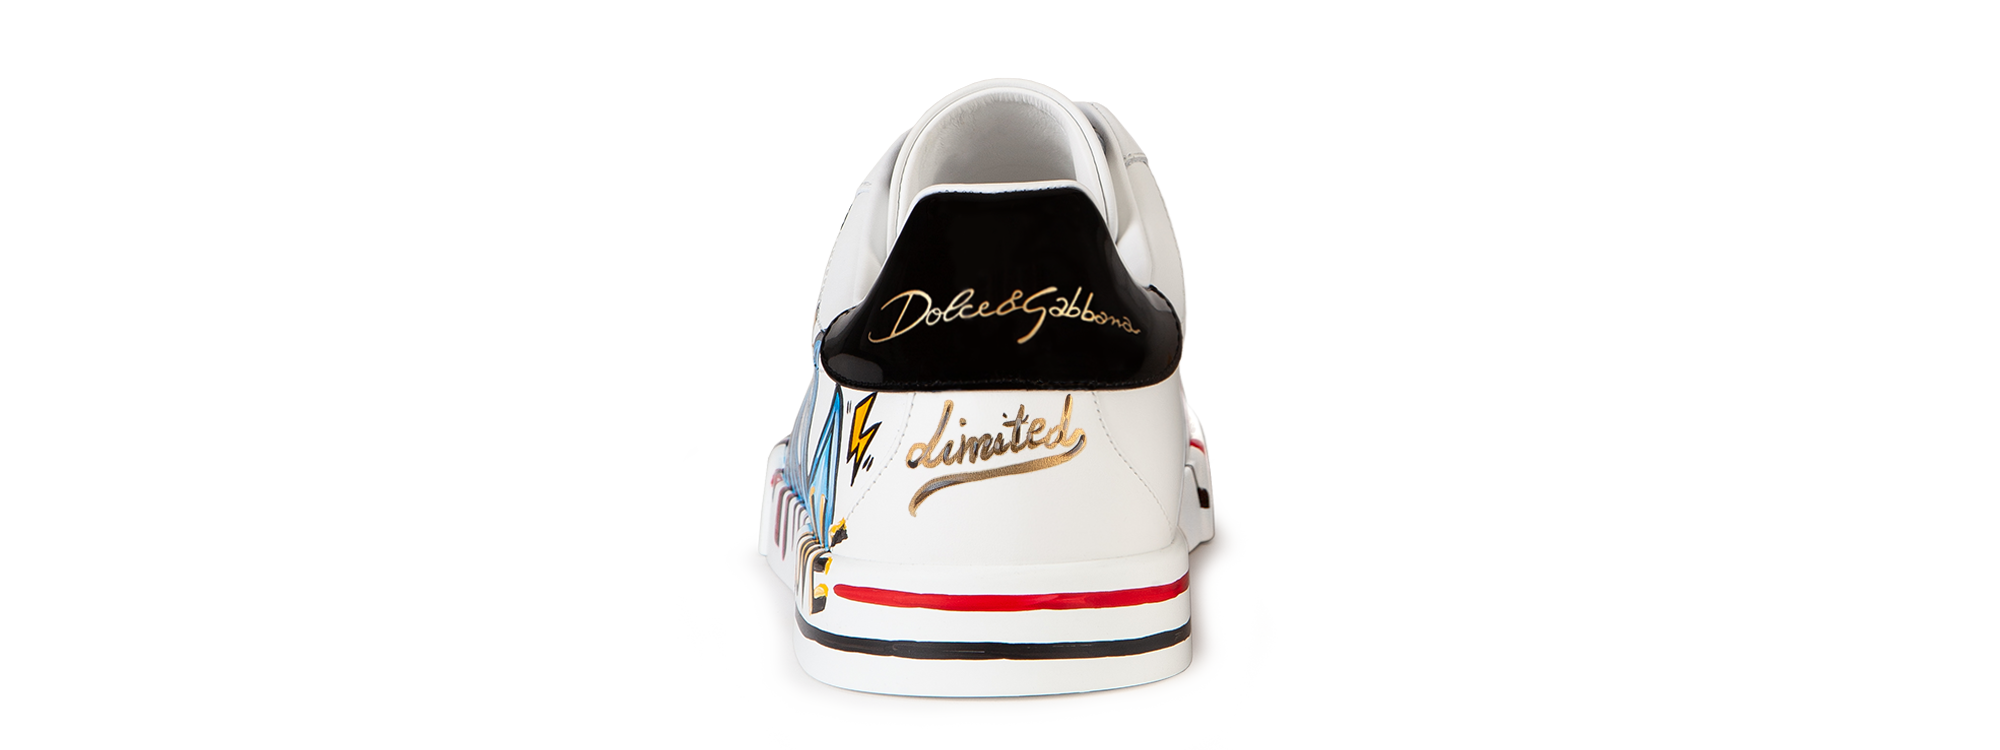 Dolce & Gabbana New DGLimited Portofino sneakers Multicolor CS1558B7056